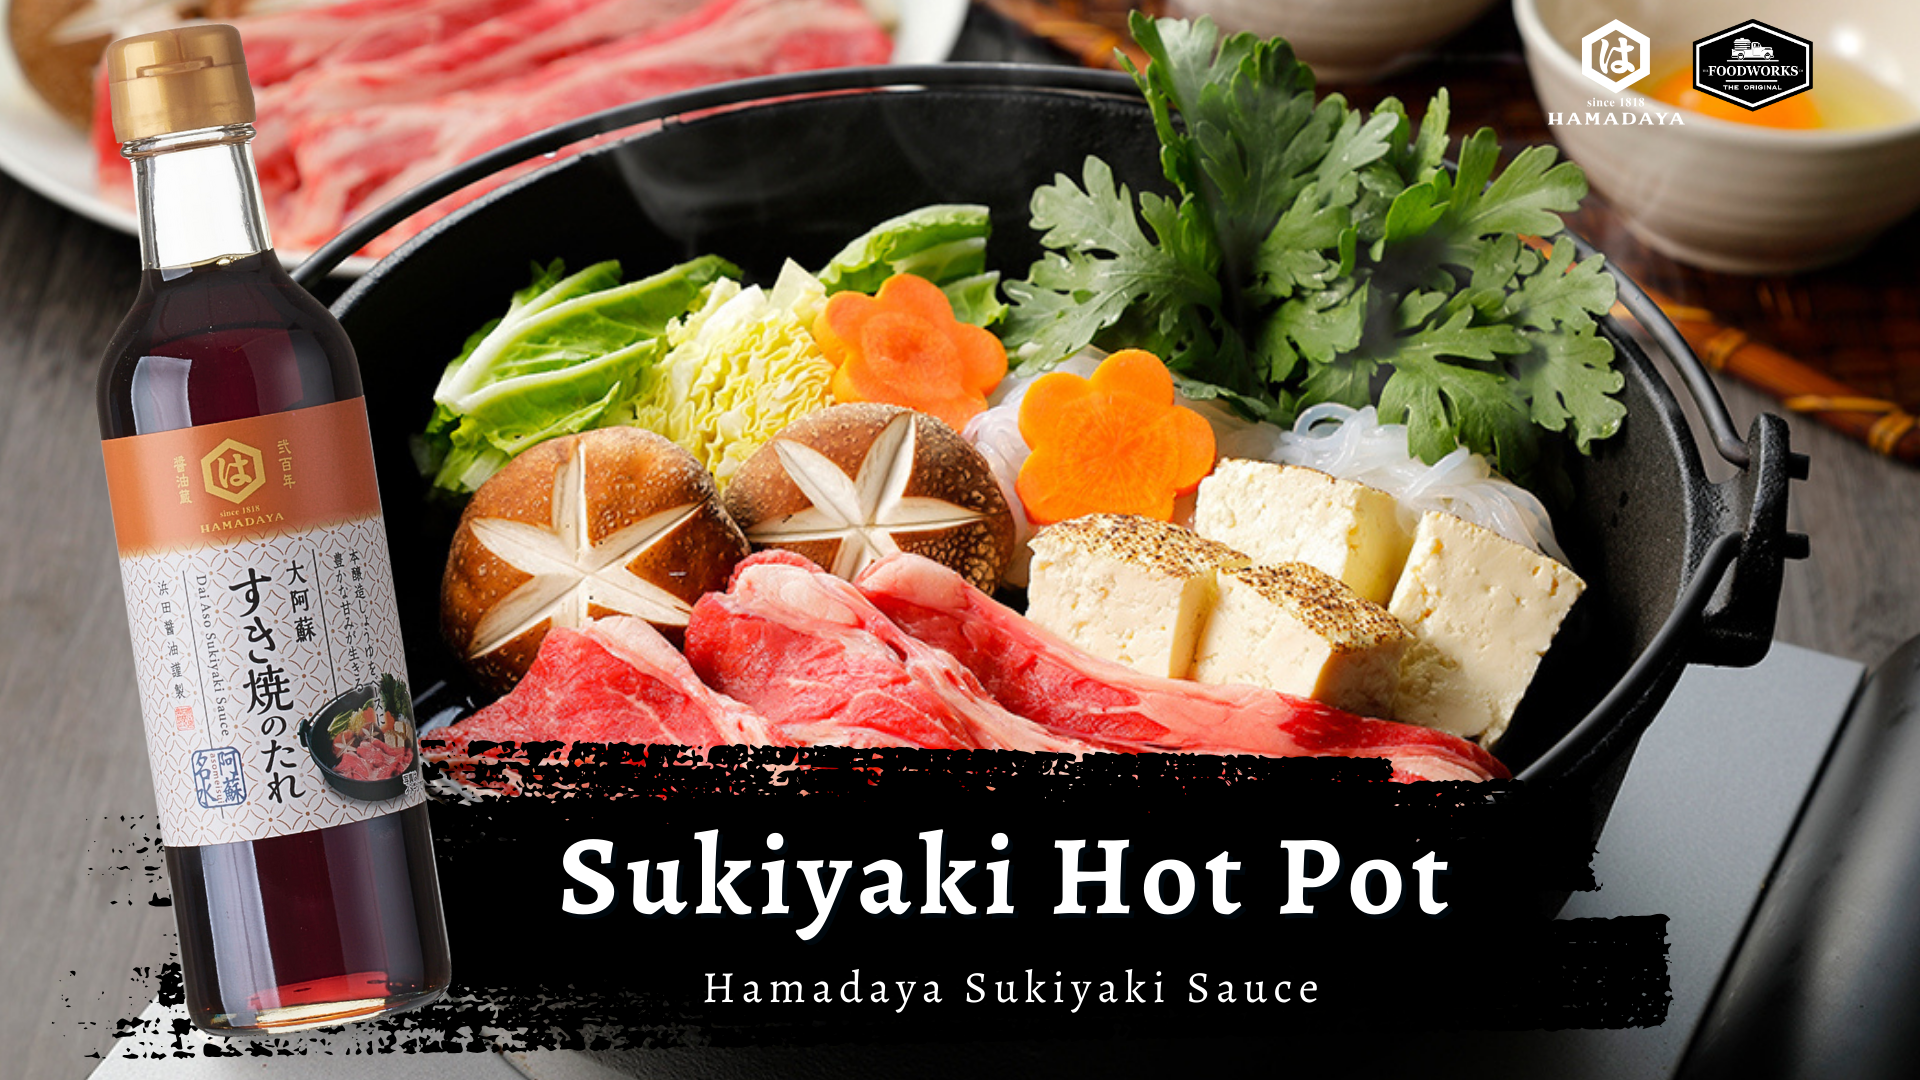 วิธีทำสุกี้ยากี้หม้อไฟ (Sukiyaki Hot Pot)